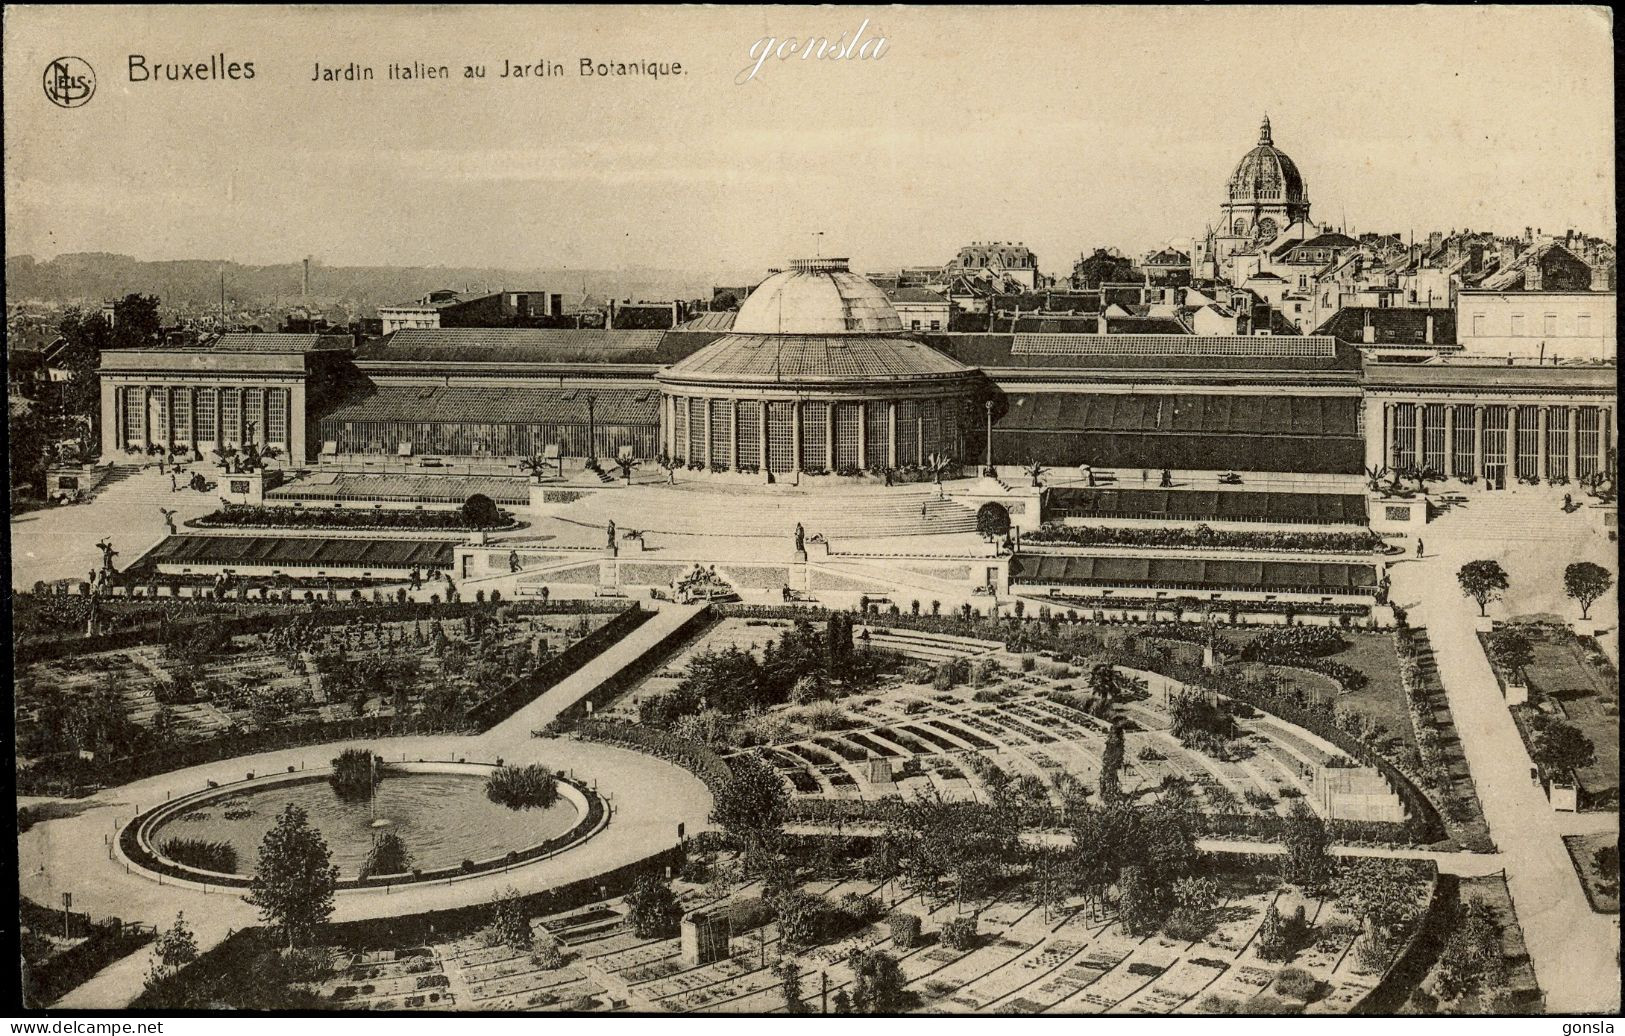 BRUXELLES 1910 " Diverses vues de Bruxelles" Lot de 18 cartes postales